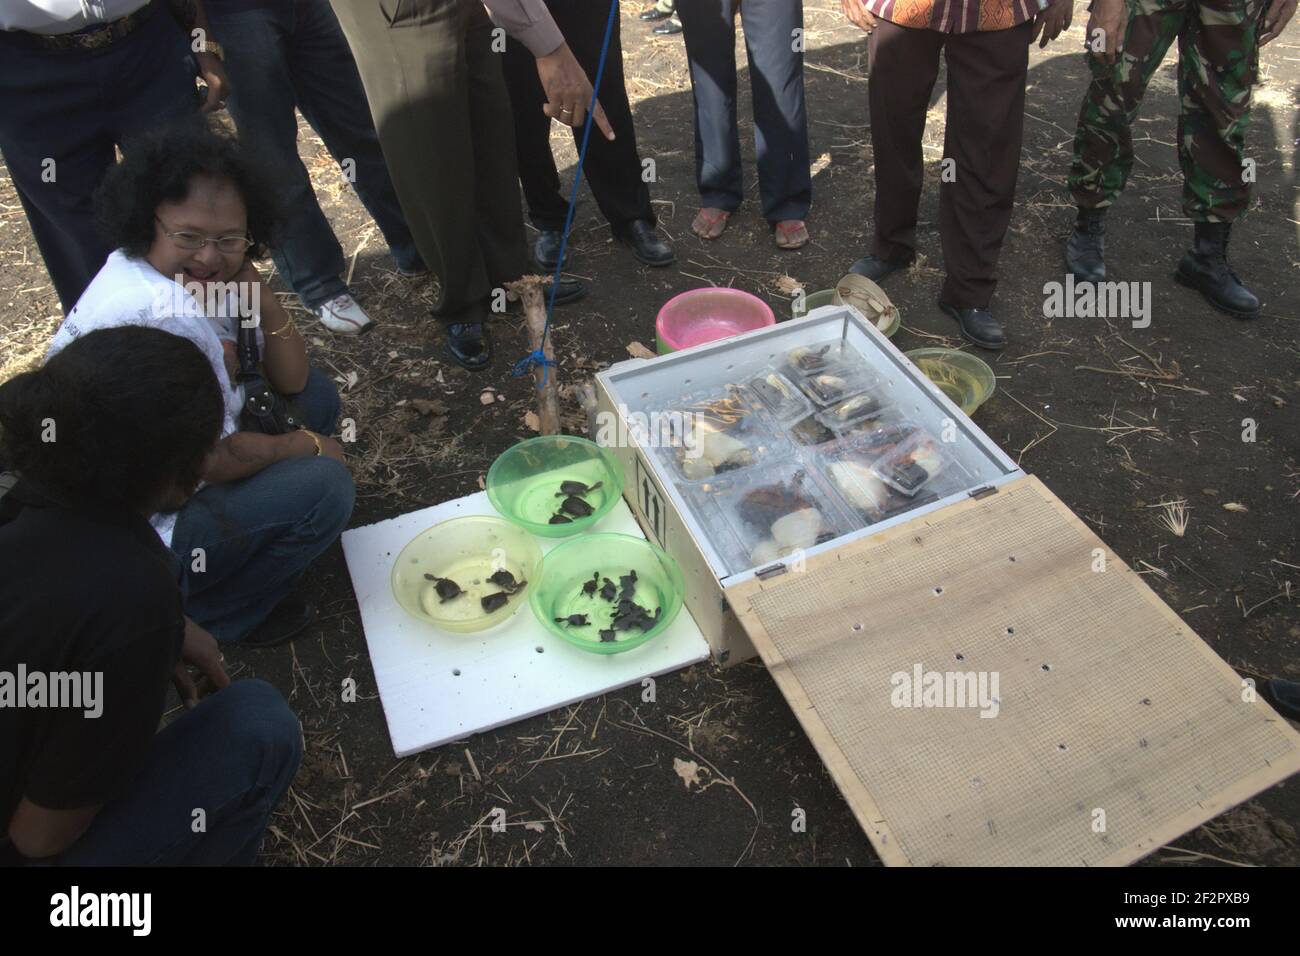 Ein Arbeiter eines Unternehmens, ein offizieller Züchter der endemischen Schlangenhalsschildkröte der Roten Insel (Chelodina mccordi), ist dabei, die Schildkröten vor einer feierlichen Veranstaltung auszupacken, um die vom Aussterben bedrohten Arten in den Peto-See im Dorf Maubesi, Rote Insel, Indonesien, zu entlassen. Stockfoto